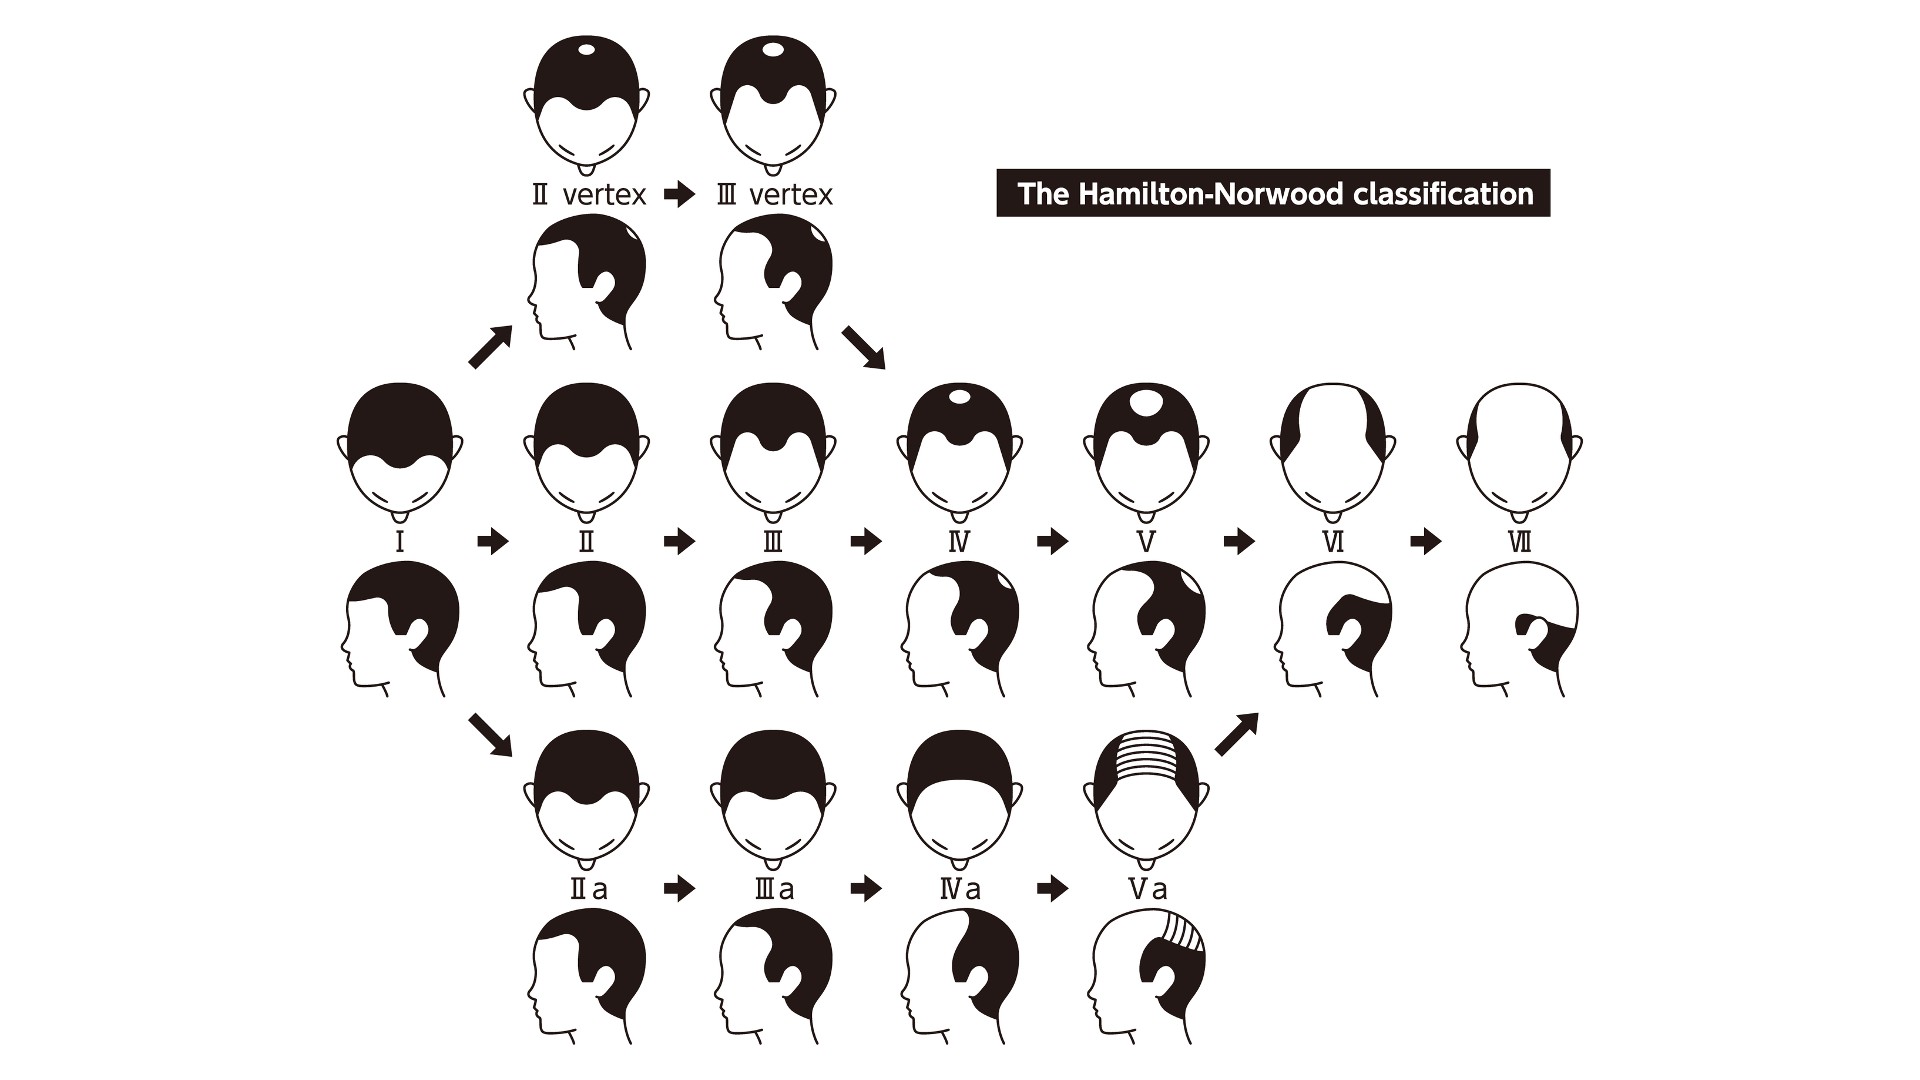 बालों के झड़ने के चरणों और पुरुष सिर पर चित्रित गंजापन के प्रकार की सूचना चार्ट।